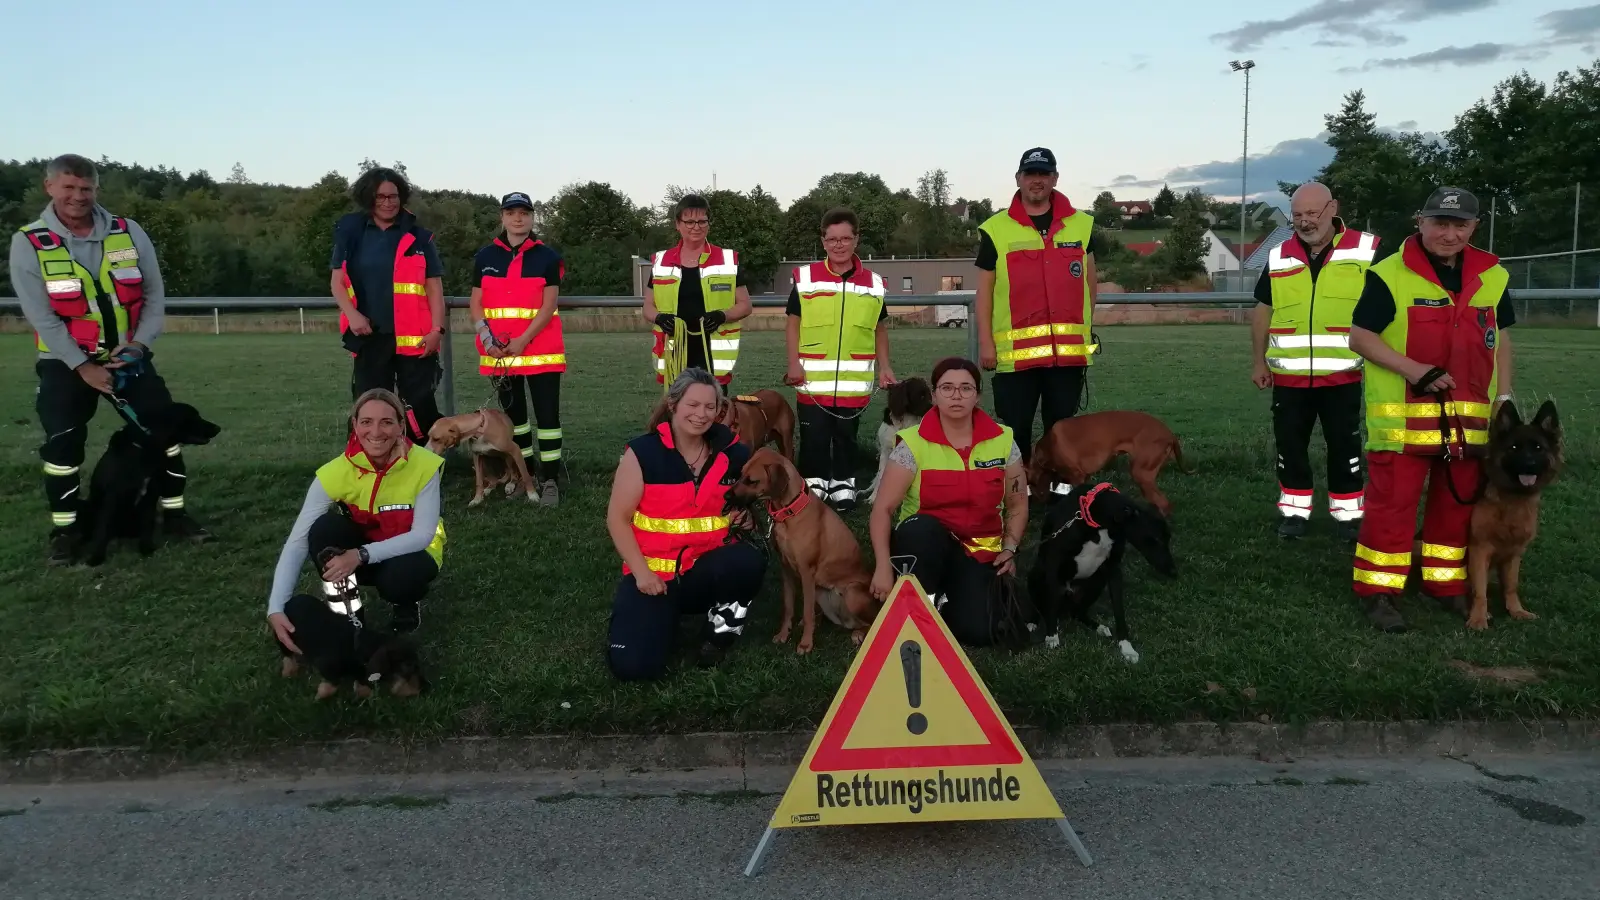 Die Rettungshundestaffel „Mantrailer Hesselberg“ übte in Langfurth den Ernstfall. Unser Bild zeigt die Mitglieder mit ihren vierbeinigen Begleitern bei einer Trainingspause. (Foto: Friedrich Zinnecker)